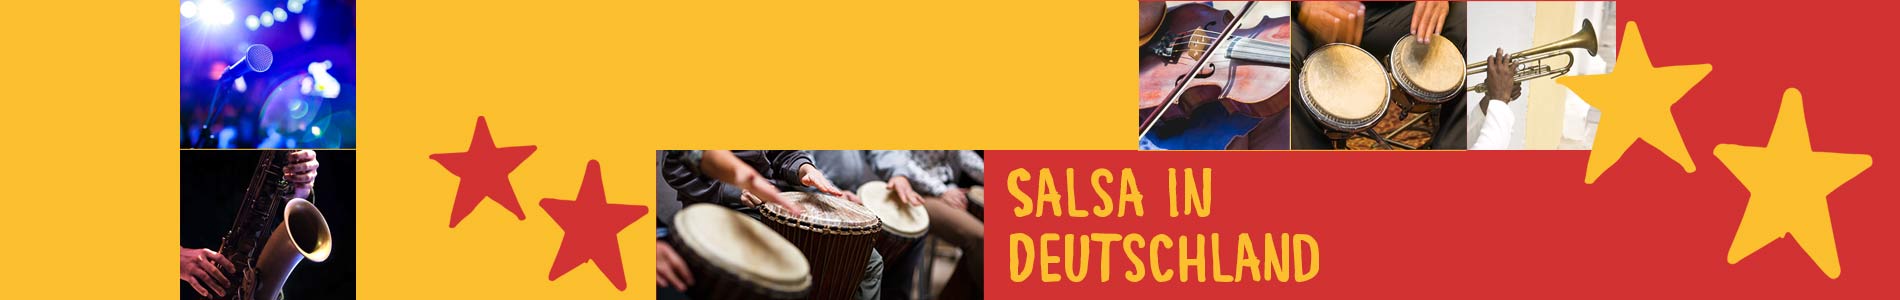 Salsa in Burgwerben – Salsa lernen und tanzen, Tanzkurse, Partys, Veranstaltungen